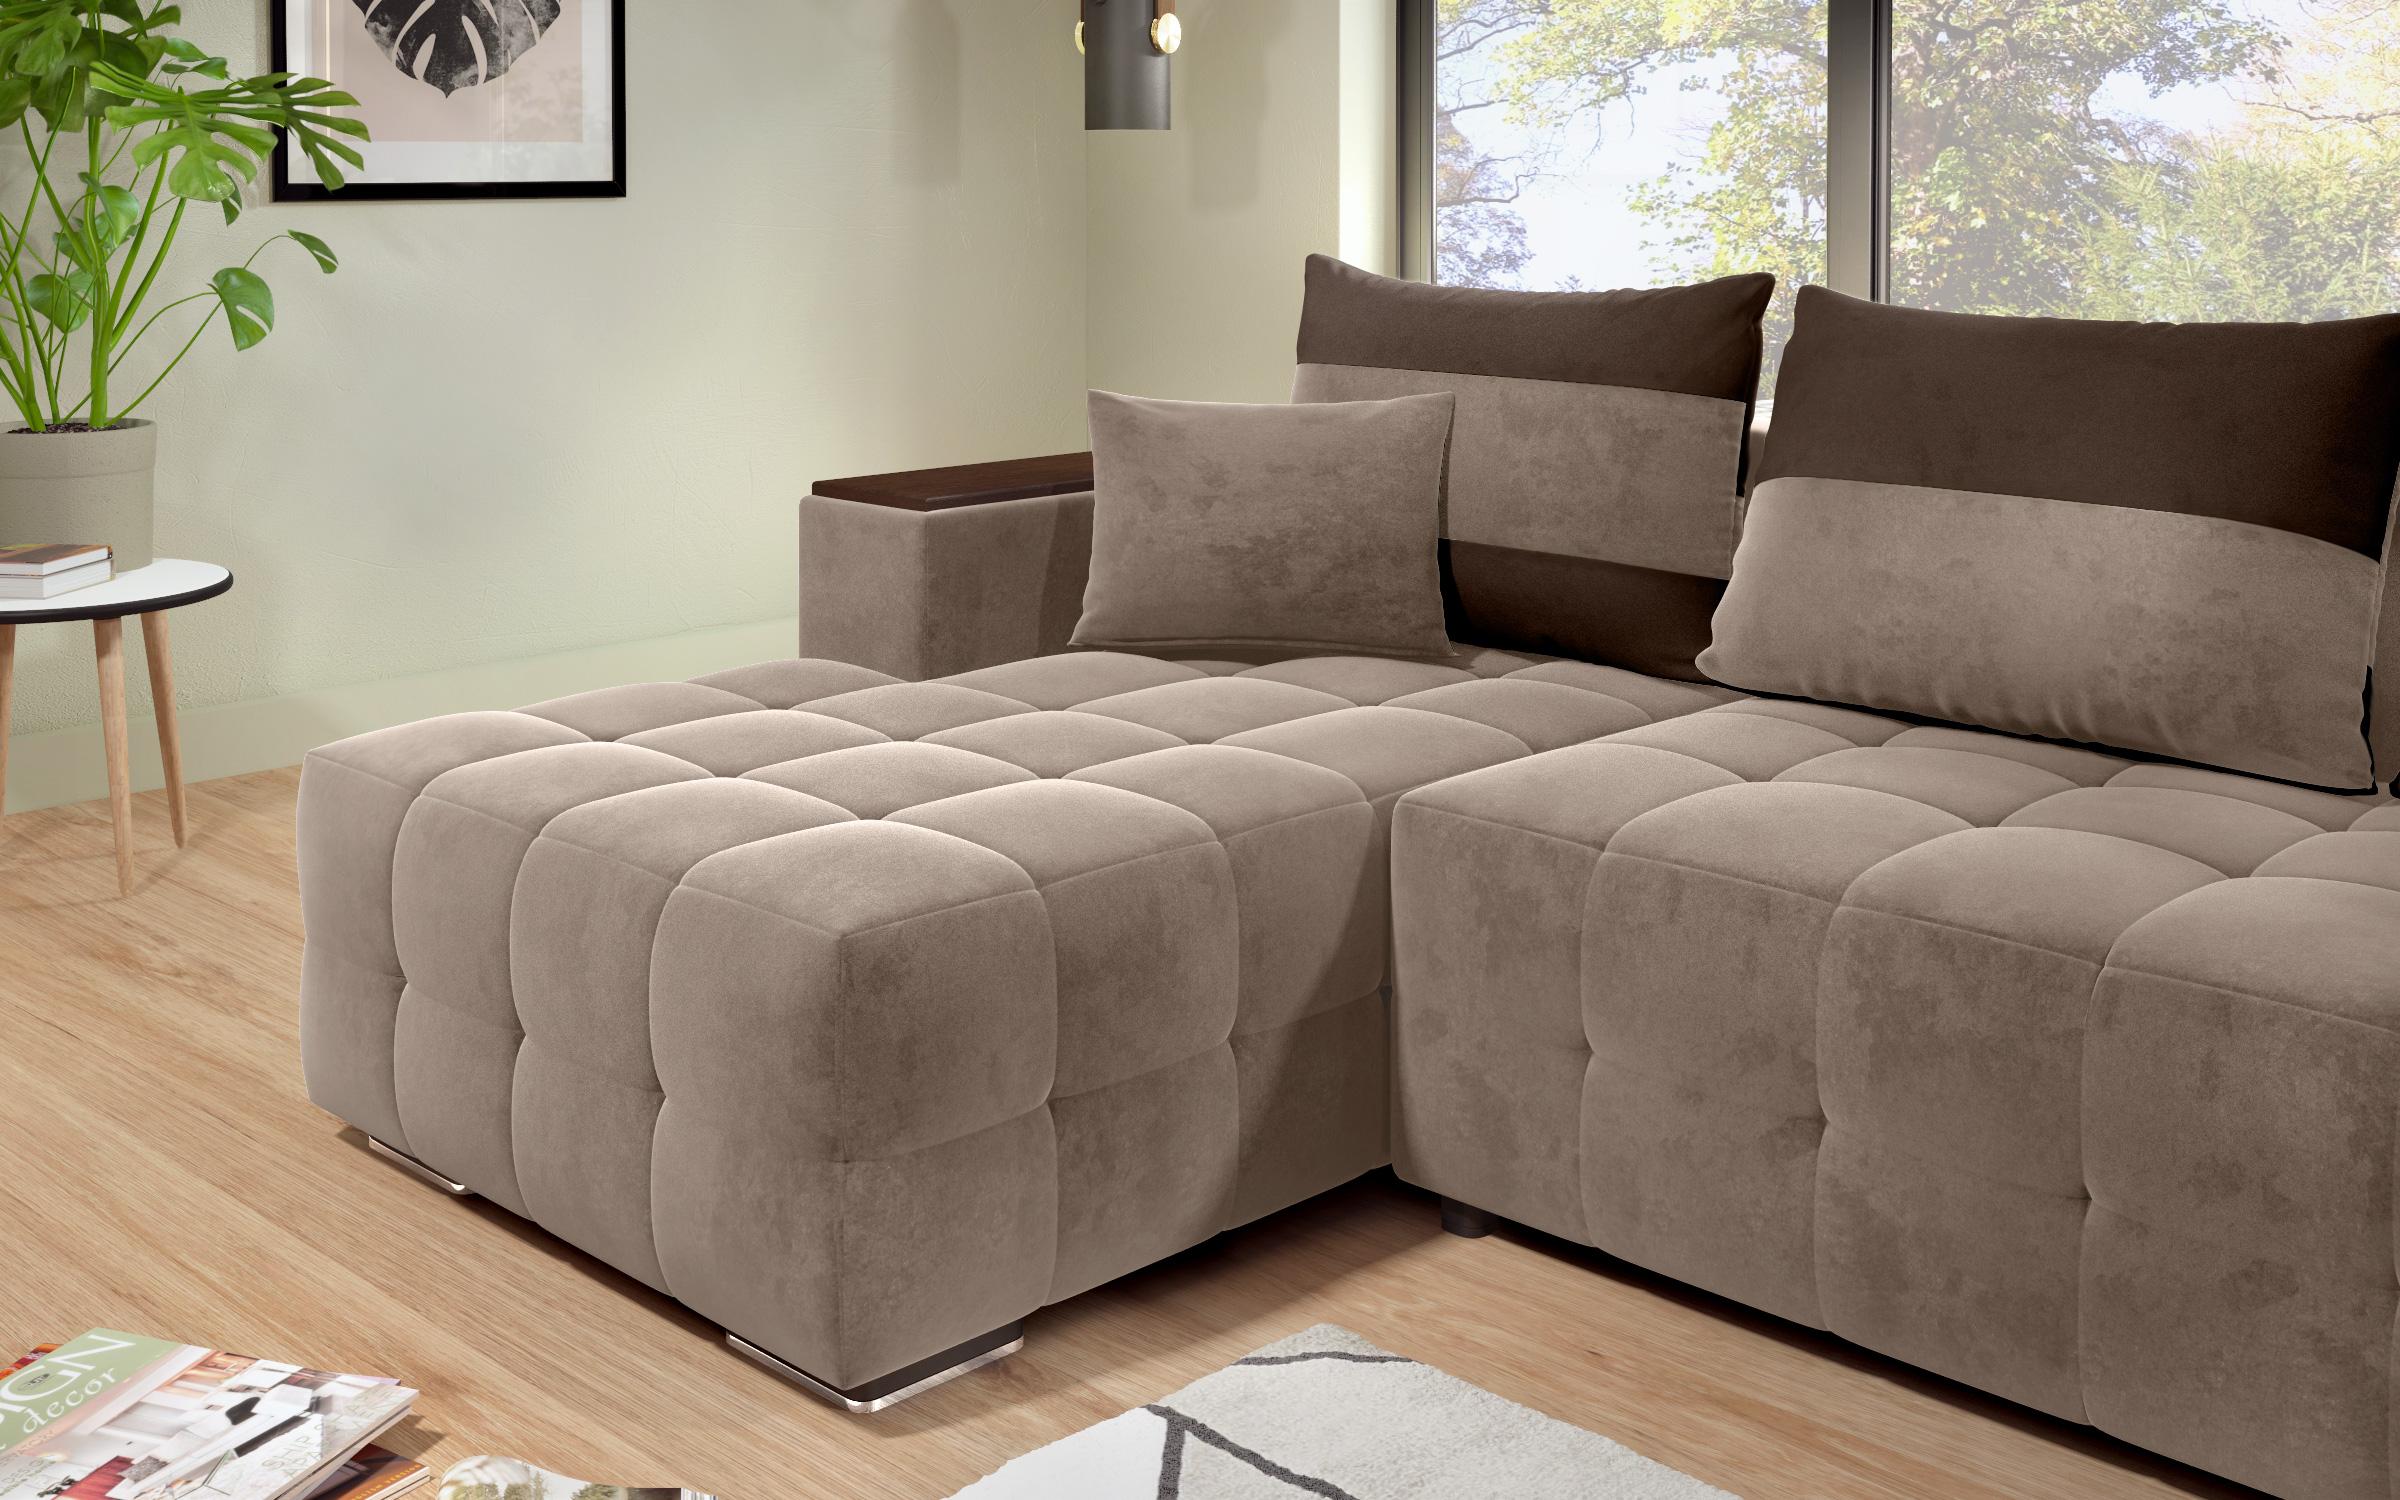 Γωνιακός καναπές - κρεβάτι με ανάκλιντρο και μπράτσο μίνι ραφιέρα Melvin S, σκούρο μπεζ + σκούρο καφέ  4